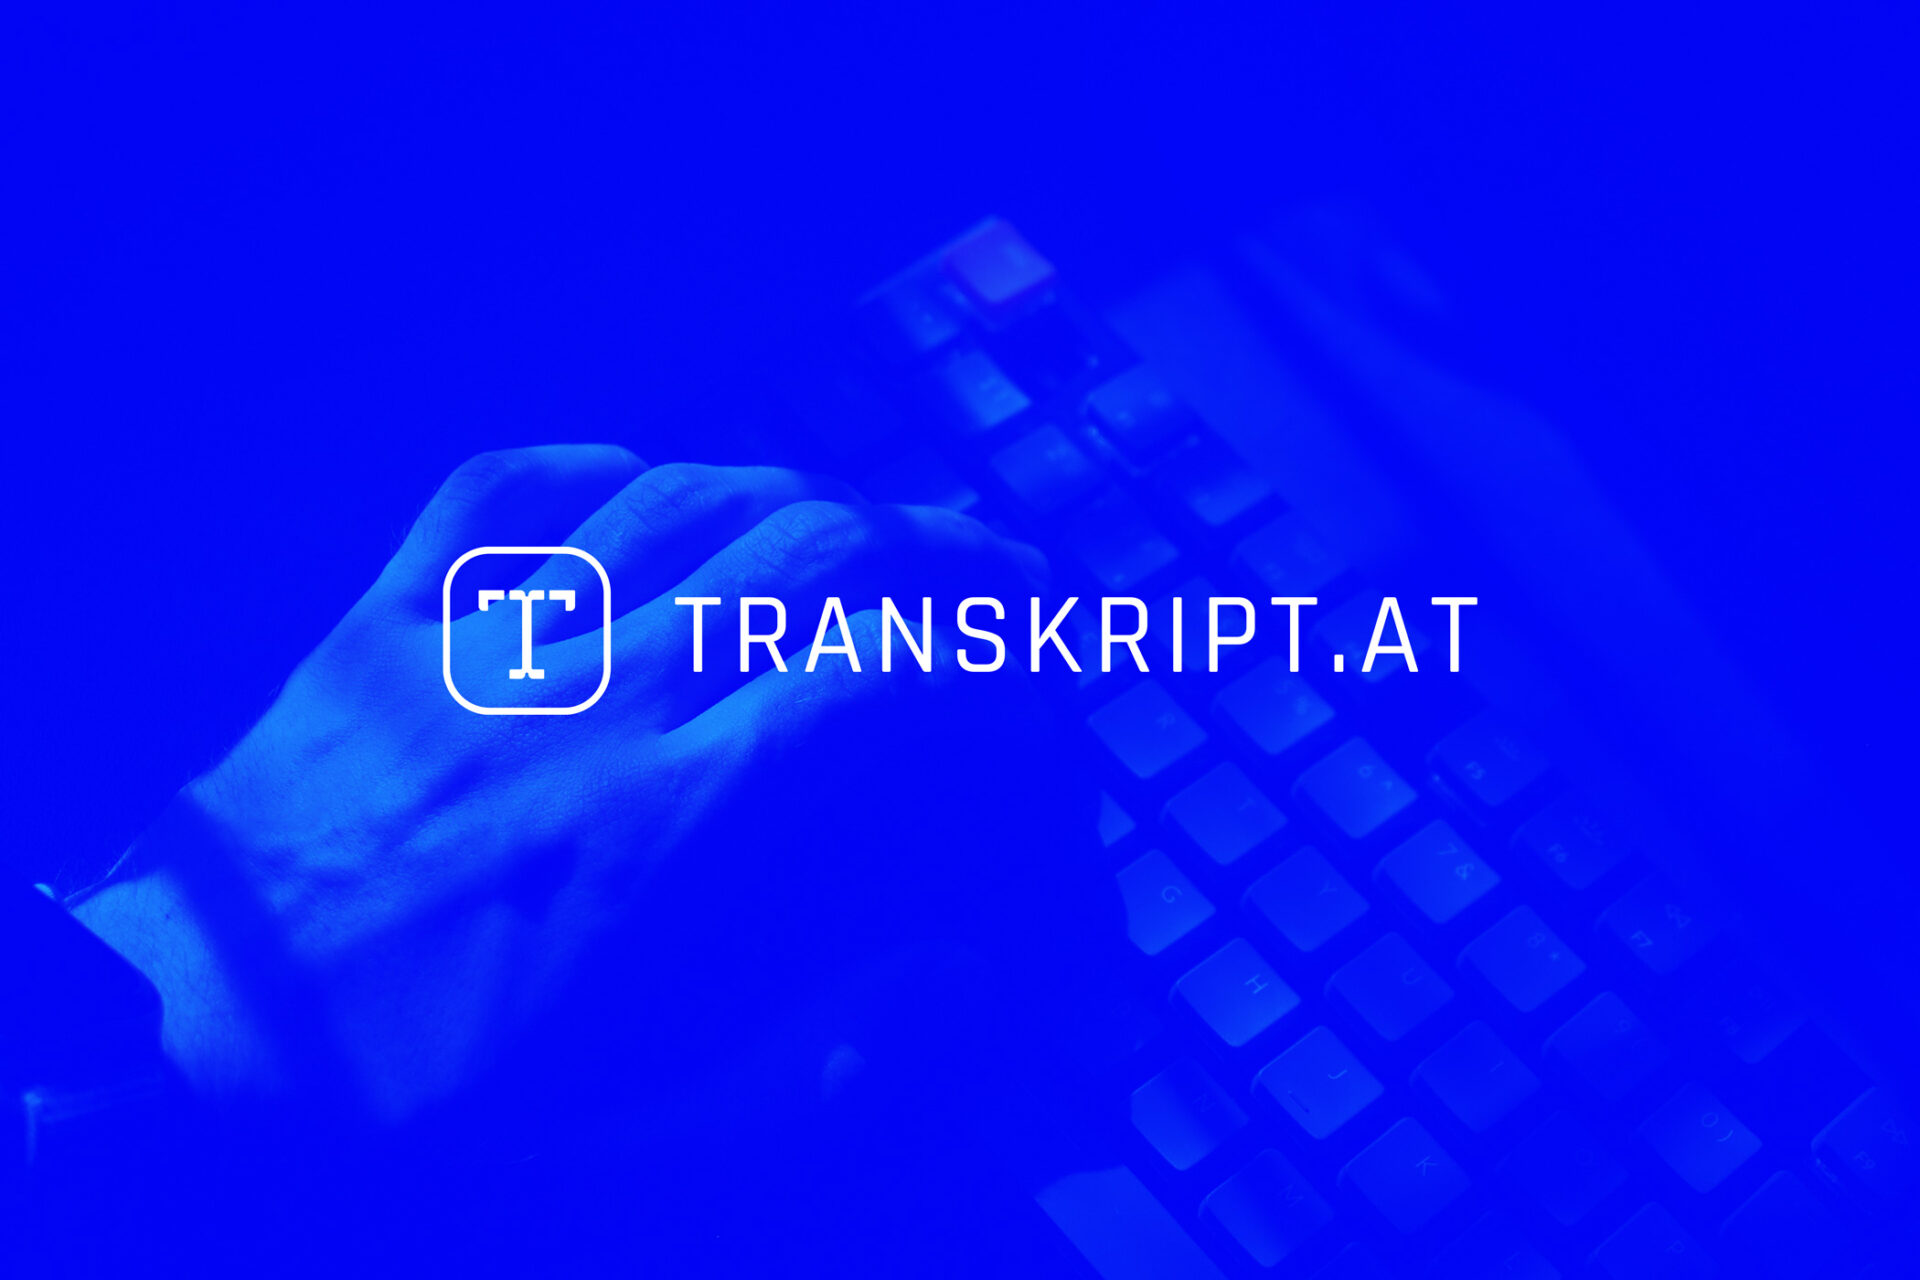 Weißes Transkript.at Logo auf blauem Foto mit Hand und Tastatur im Hintergrund.